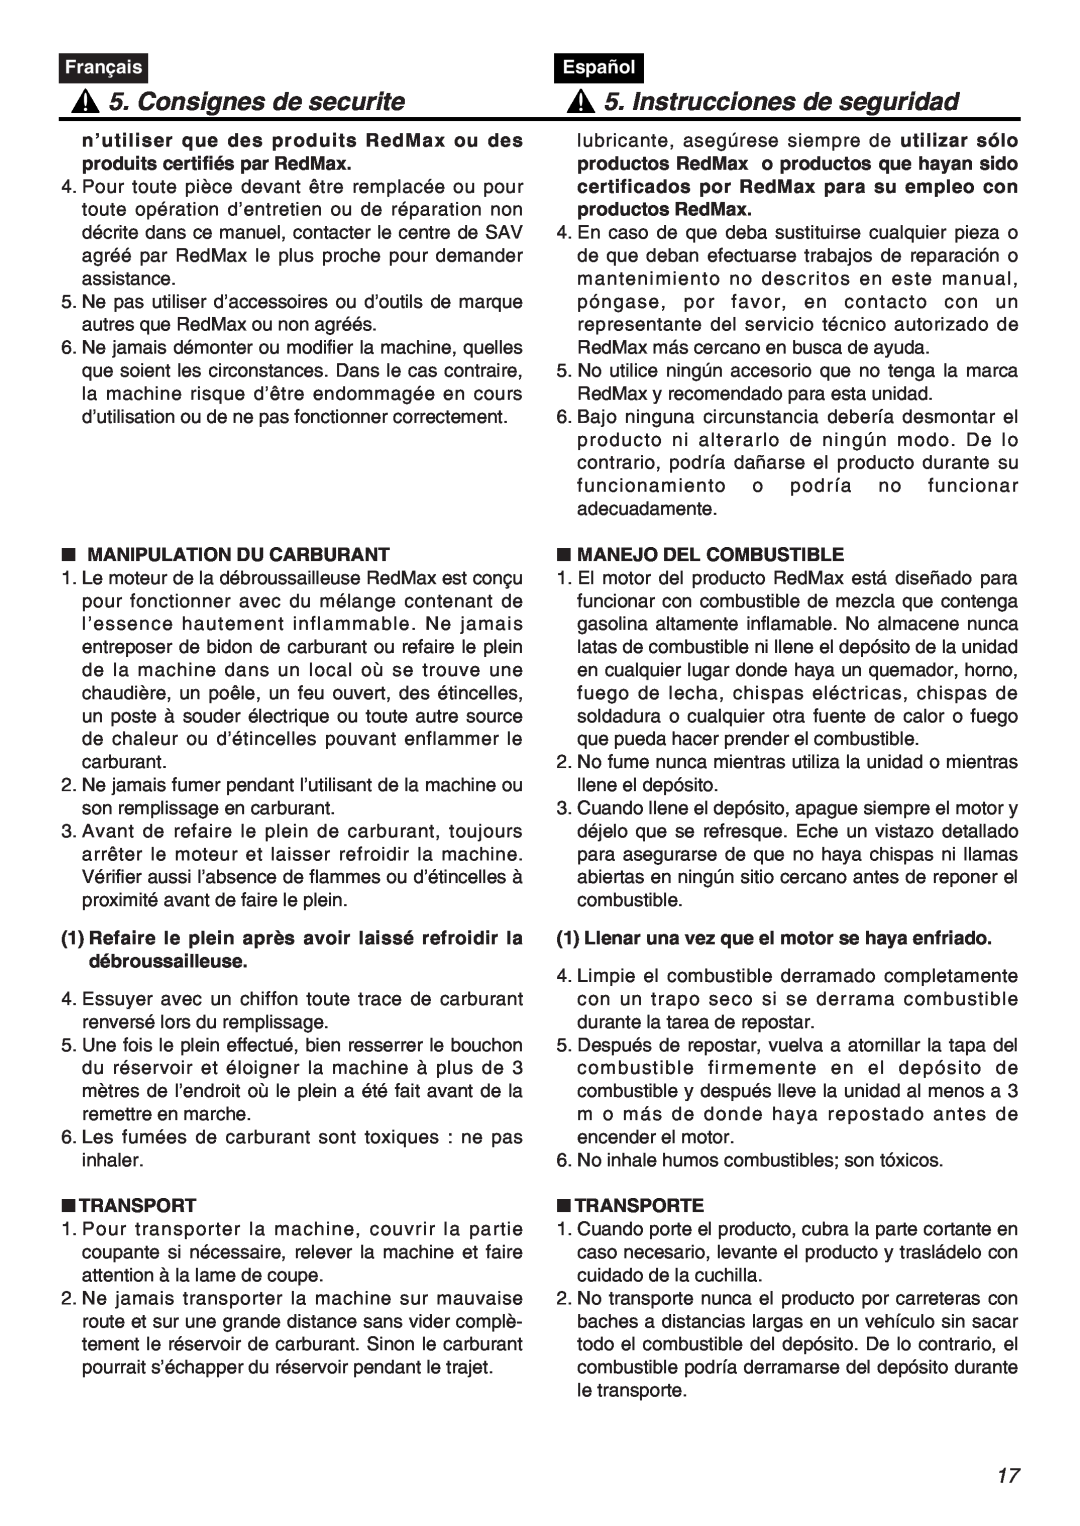 Zenoah HTZ2401 Consignes de securite, Instrucciones de seguridad, Français, Español, Manipulation Du Carburant, Transport 